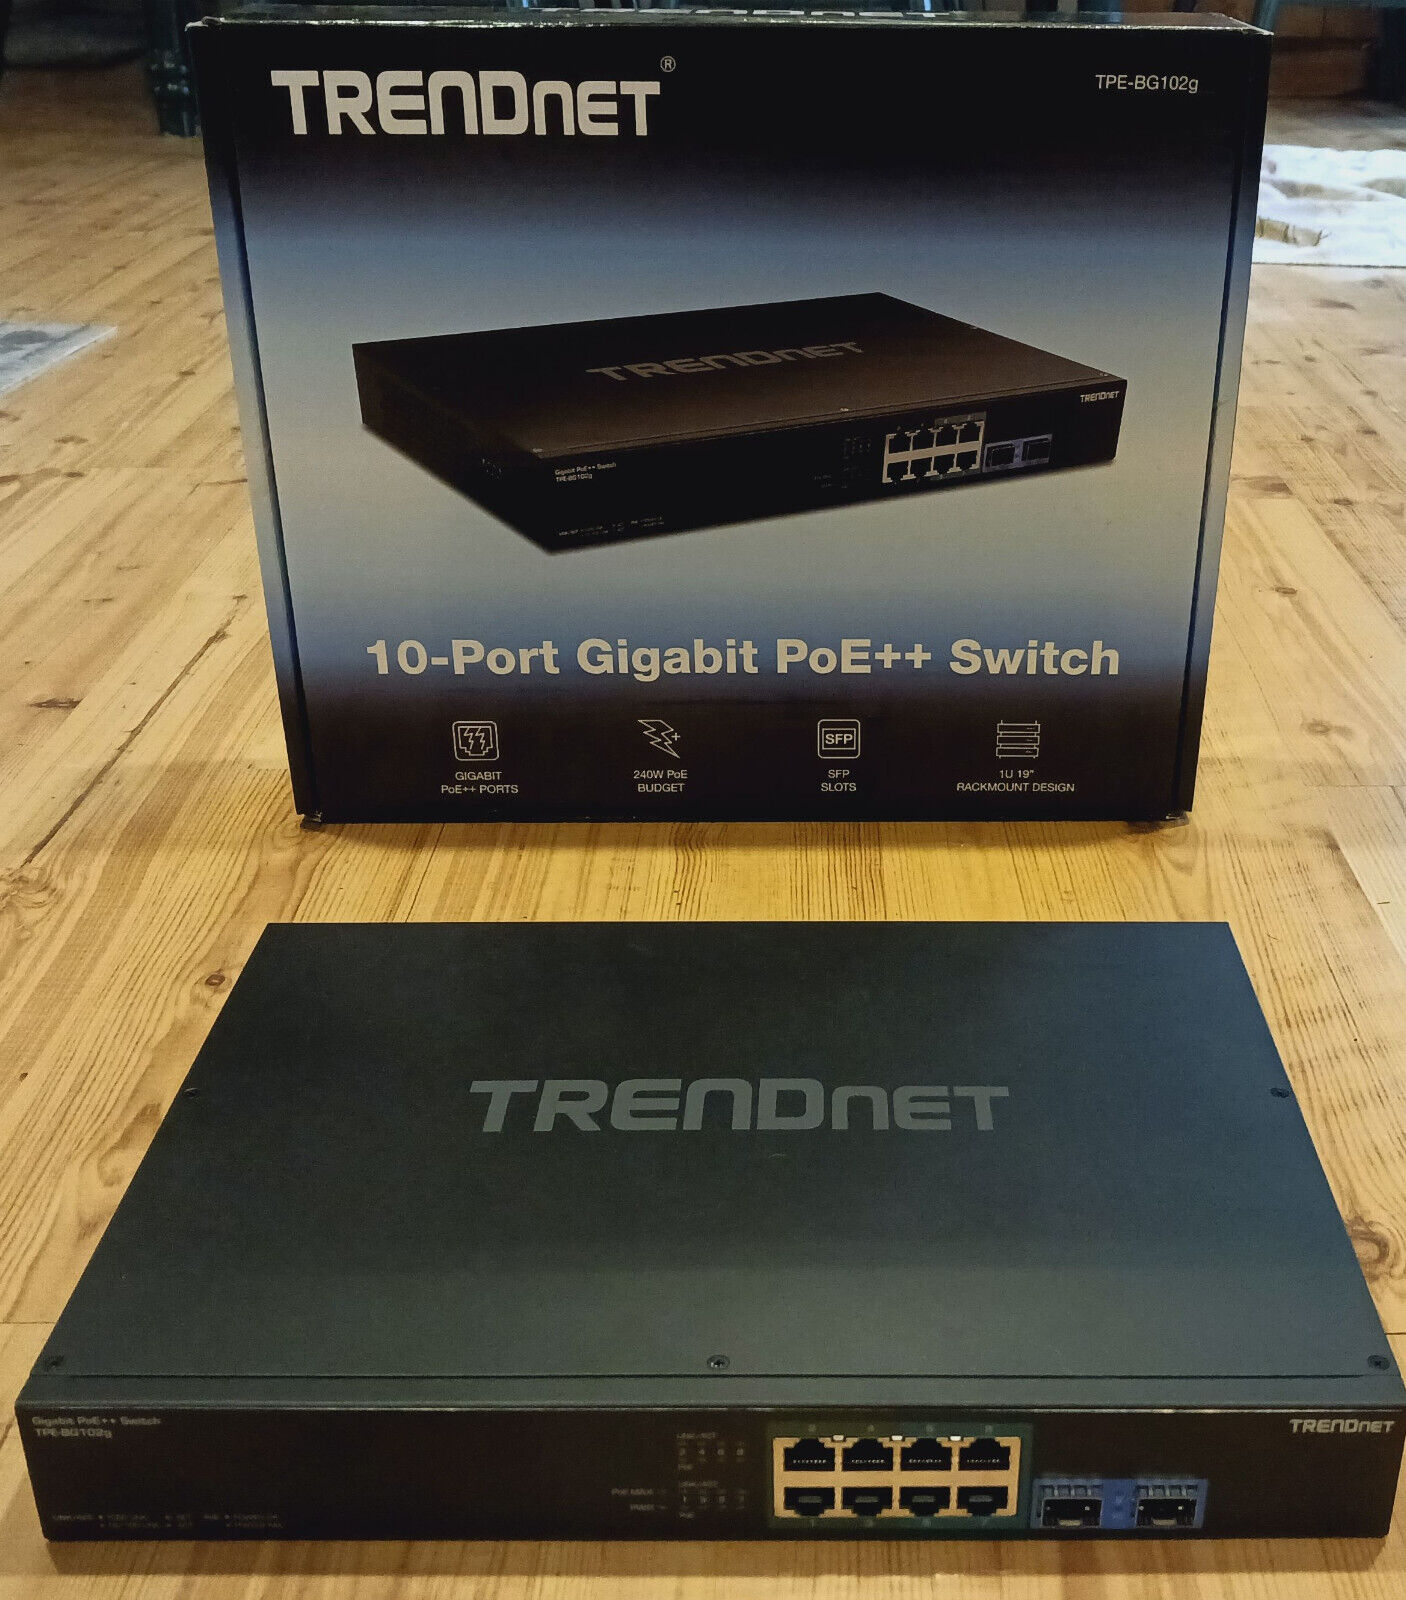 Trendnet TPE-BG102g 10-port Gigabit PoE++ Switch, rackmount kit, TAA-Compliant